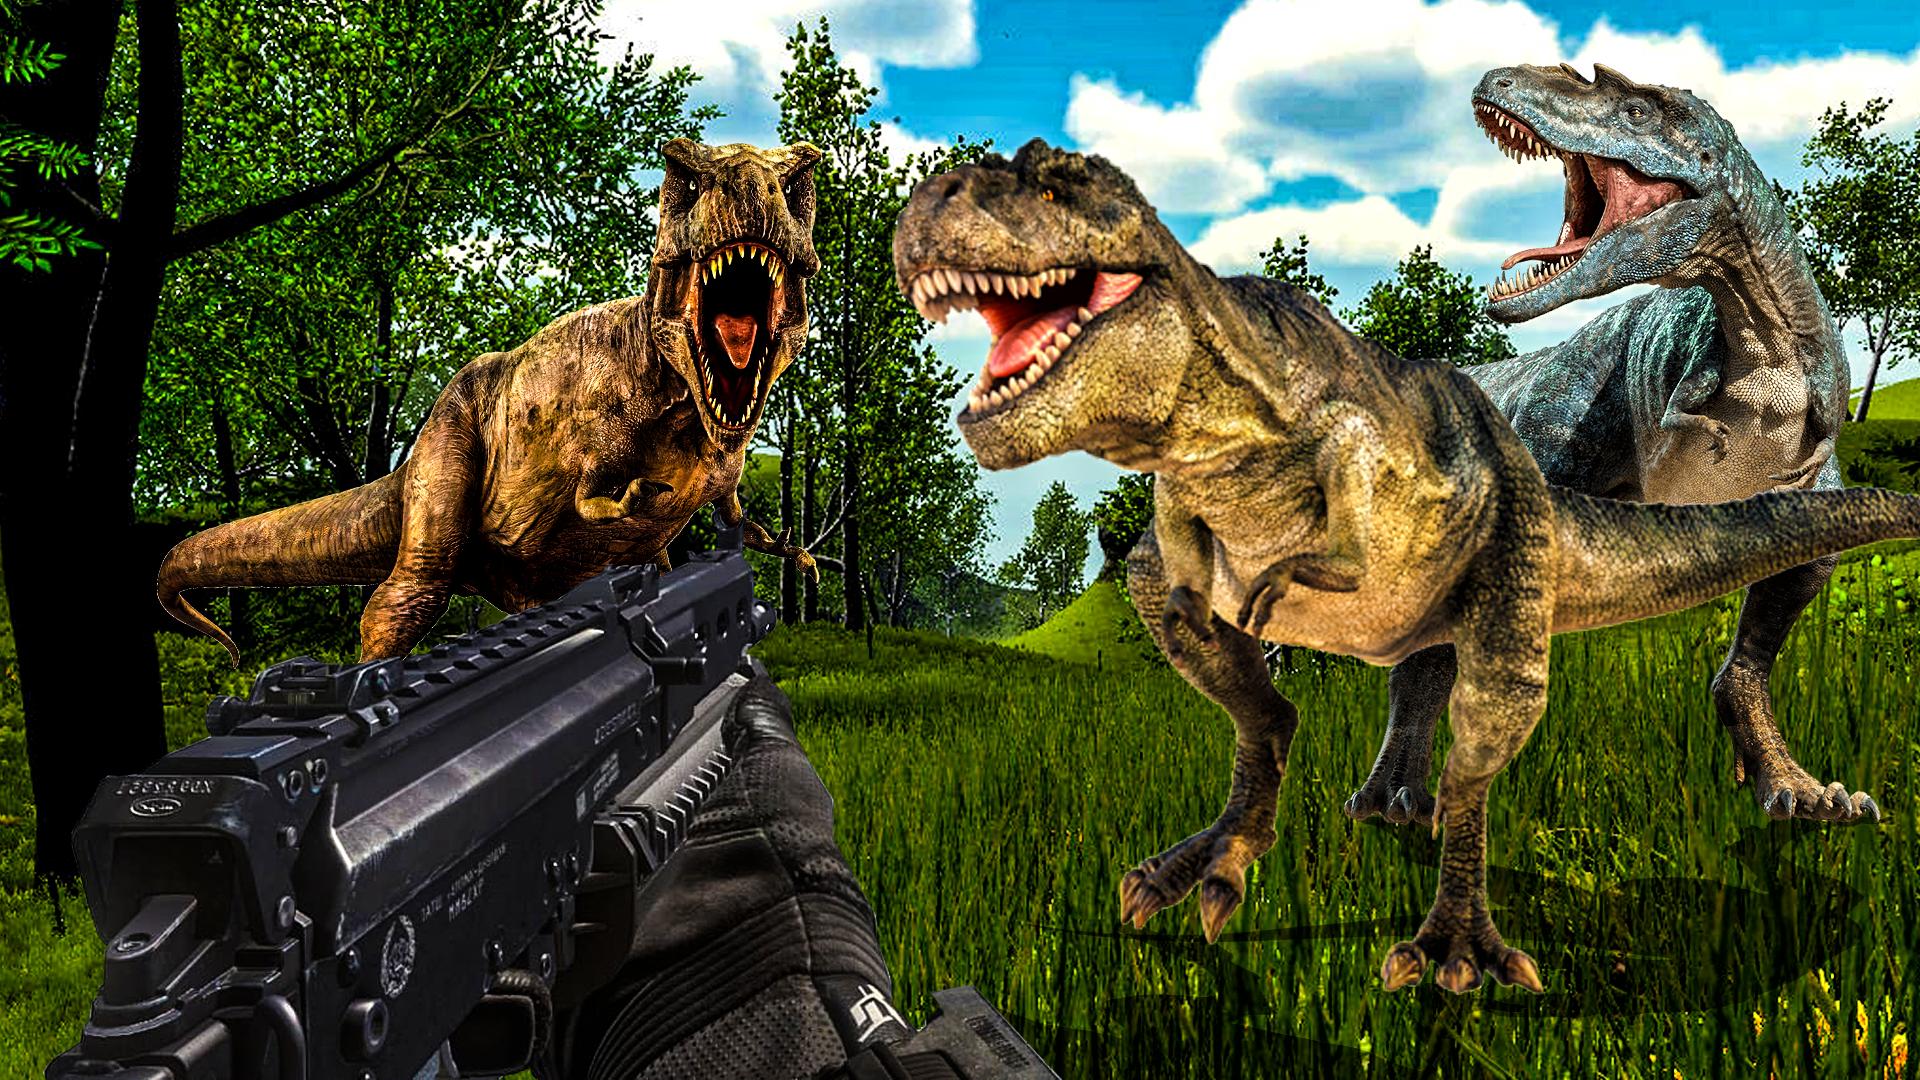 Carnivores Dino hunter game-Dinosaur game shooting 9.1 Screenshot 11